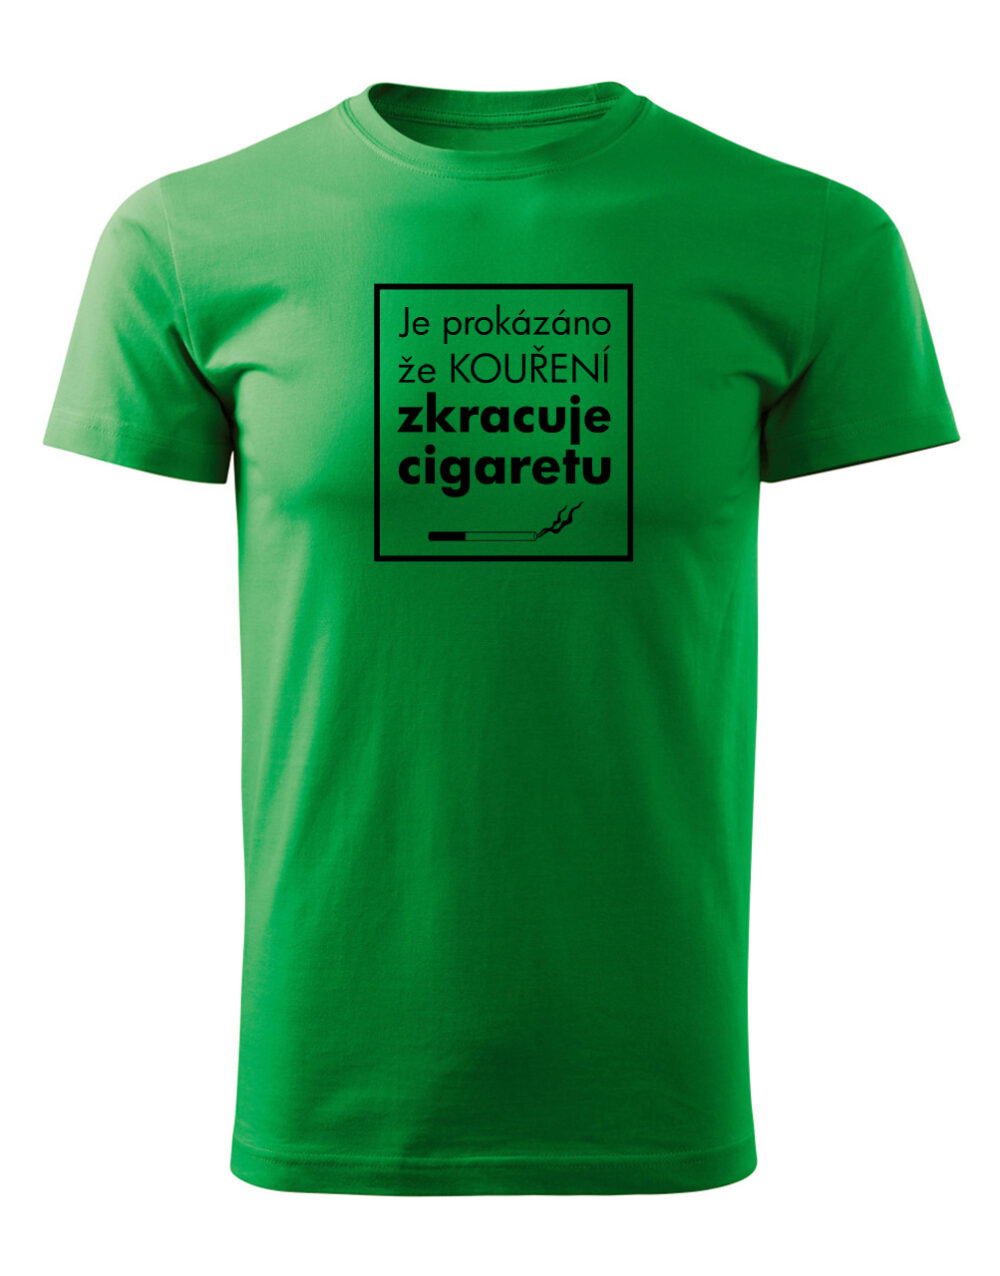 Pánské tričko s potiskem Kouření zkracuje cigaretu světle zelená